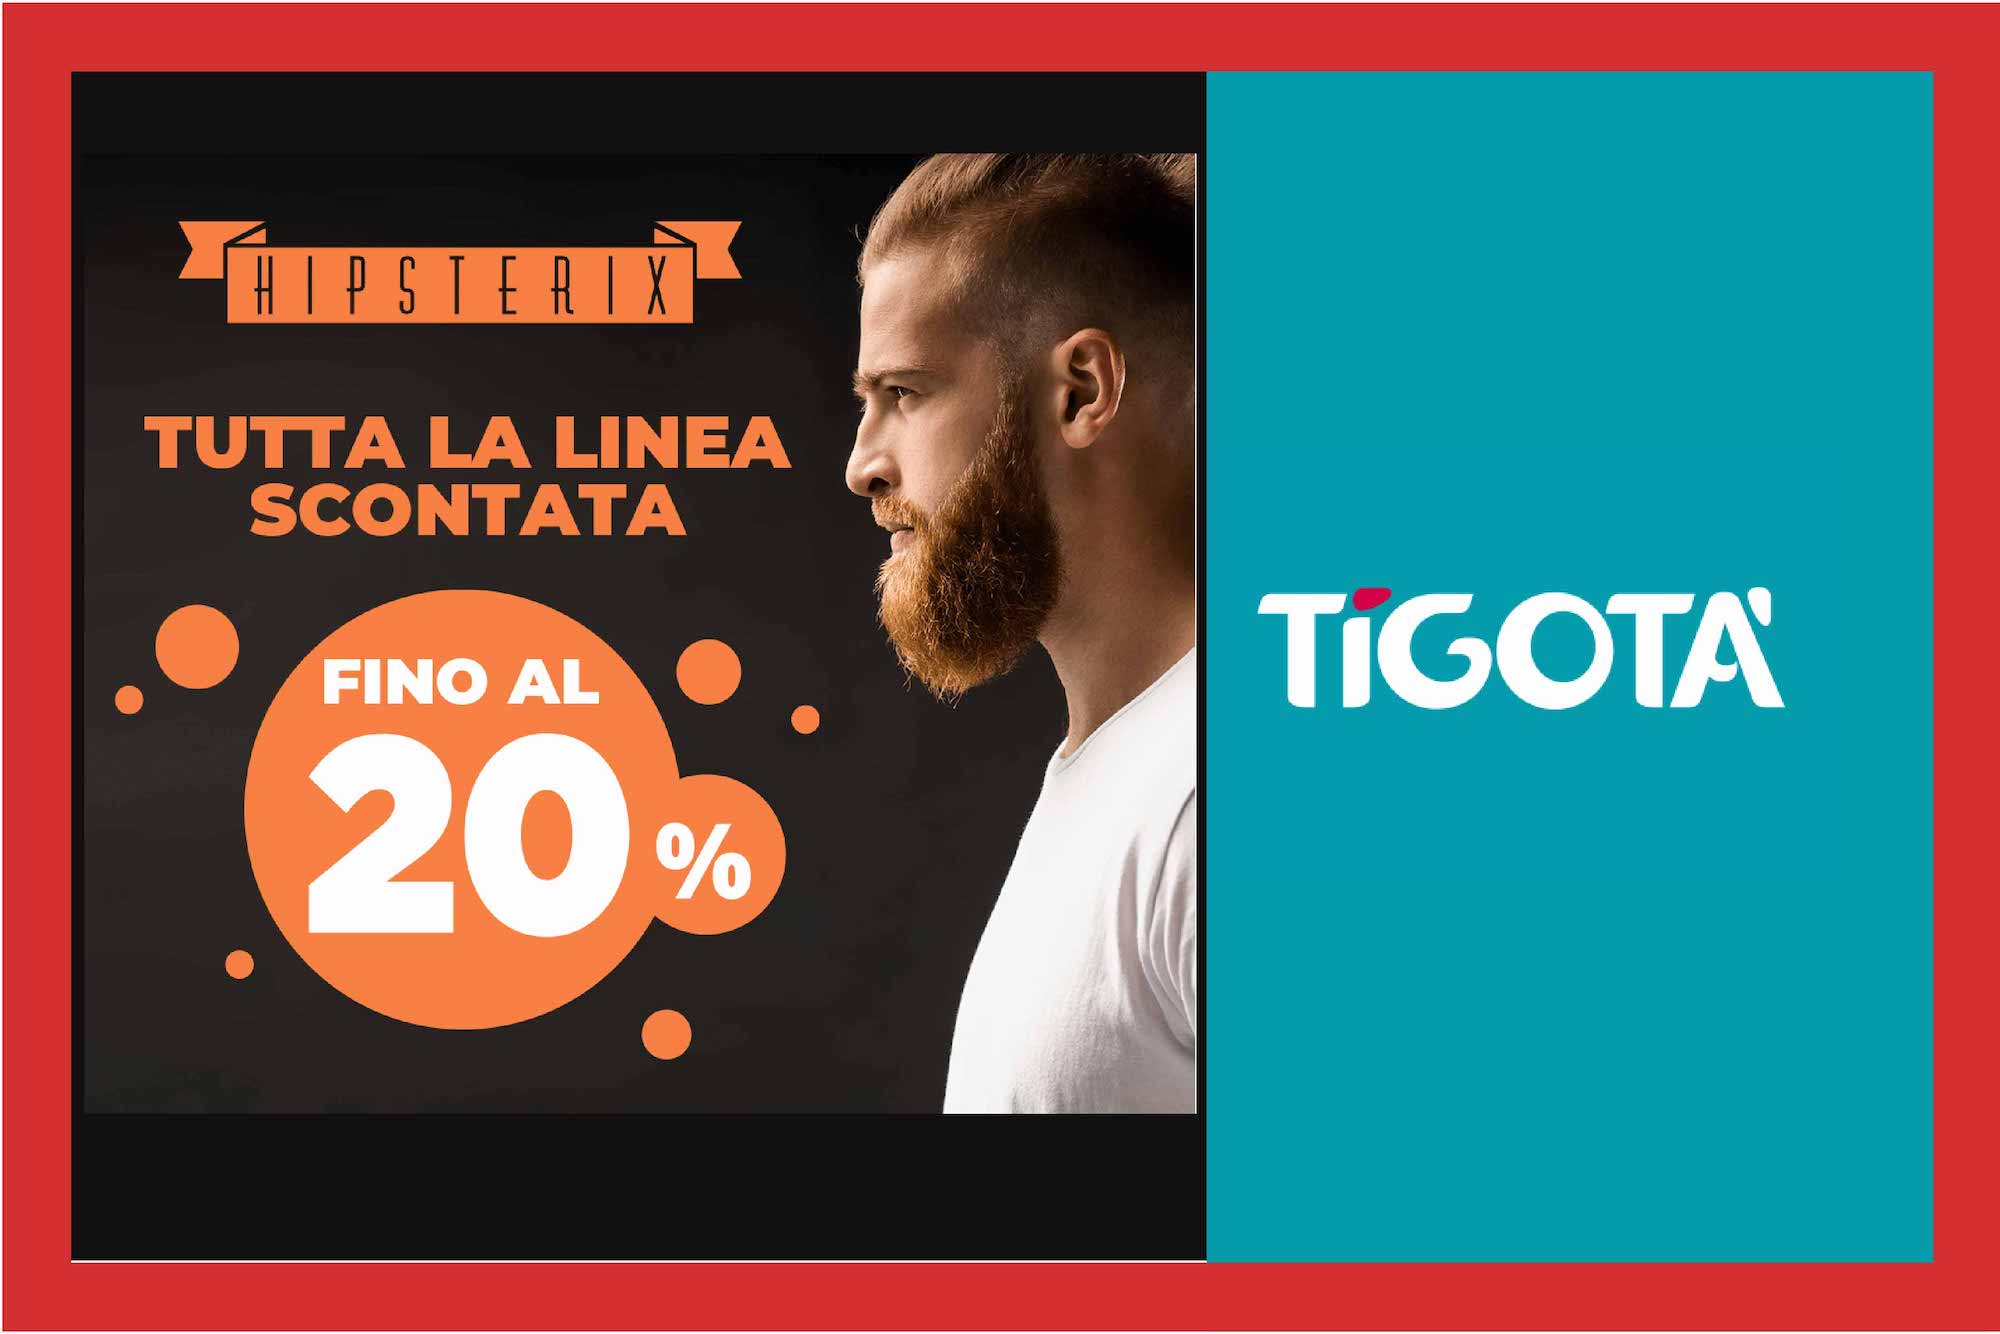 Vieni da Tigotà a scoprire i prodotti da barba Hipsterix 🥰 a novembre tutta la linea scontata fino al 20%!